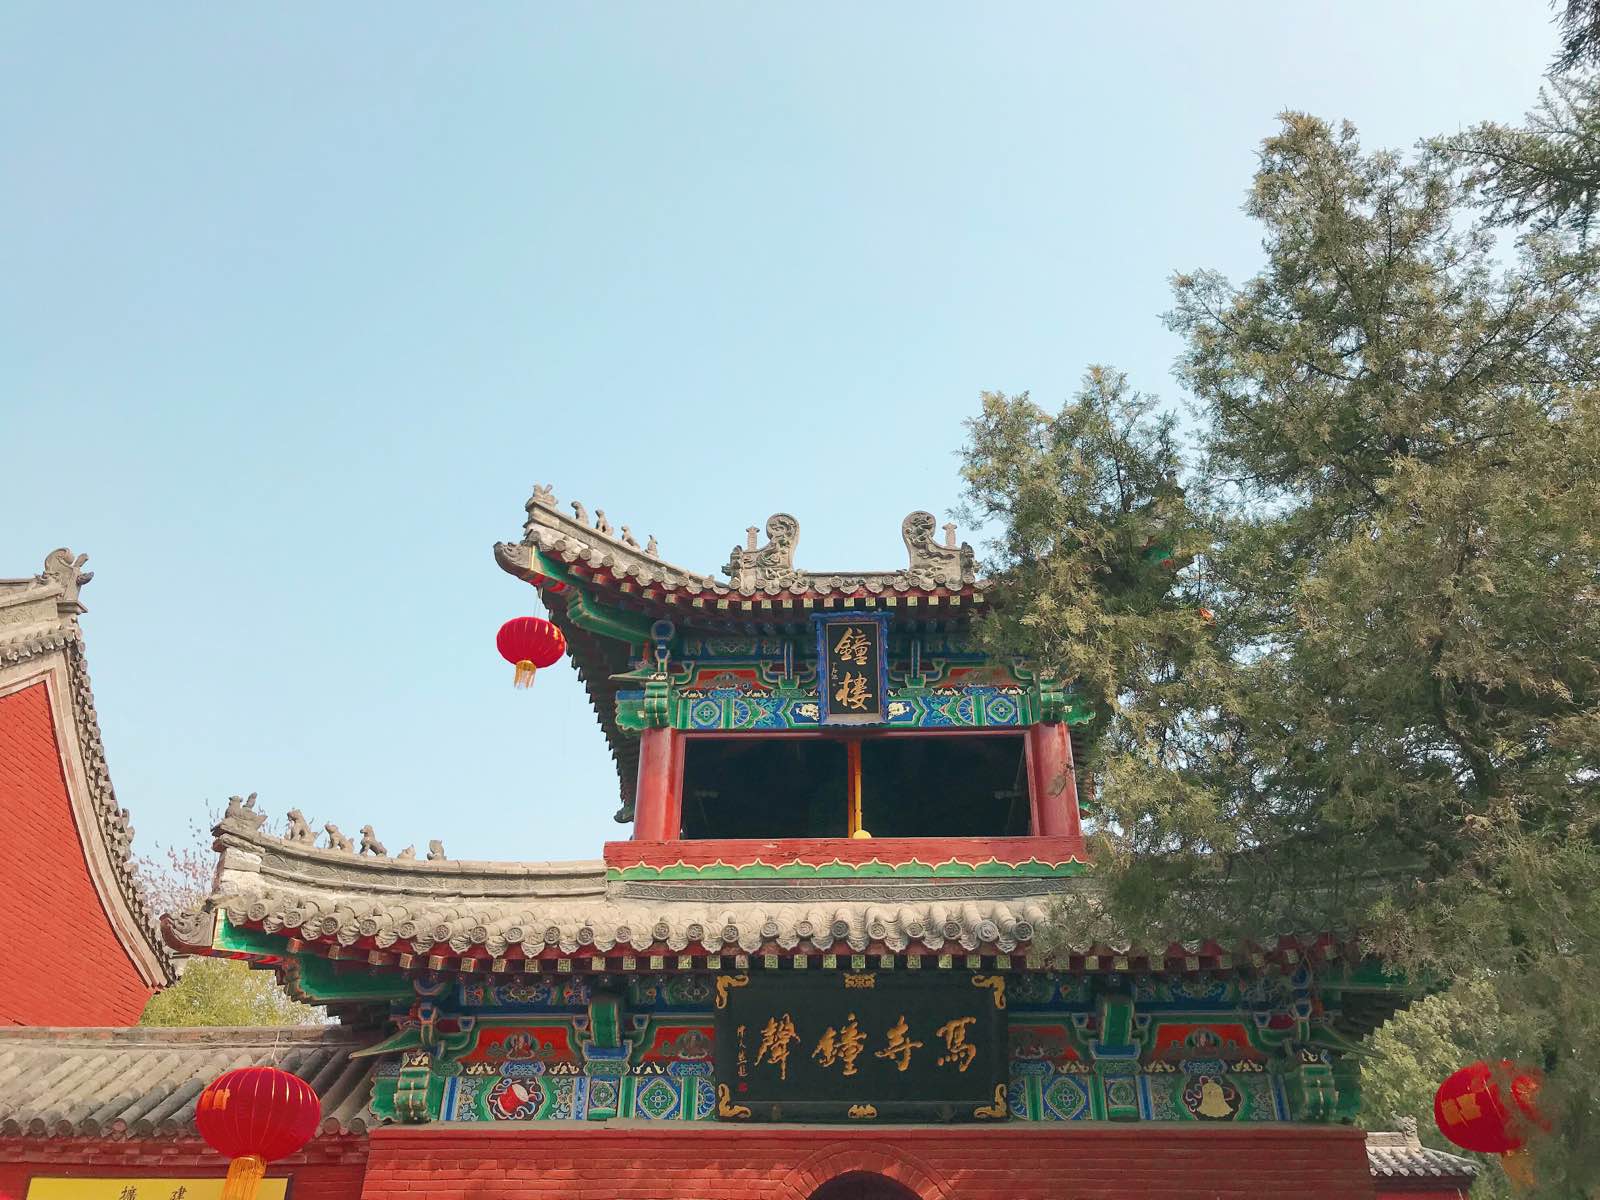 有中国佛寺“祖庭”和“释源”之称的白马寺，建筑风格古朴不失庄严，名副其